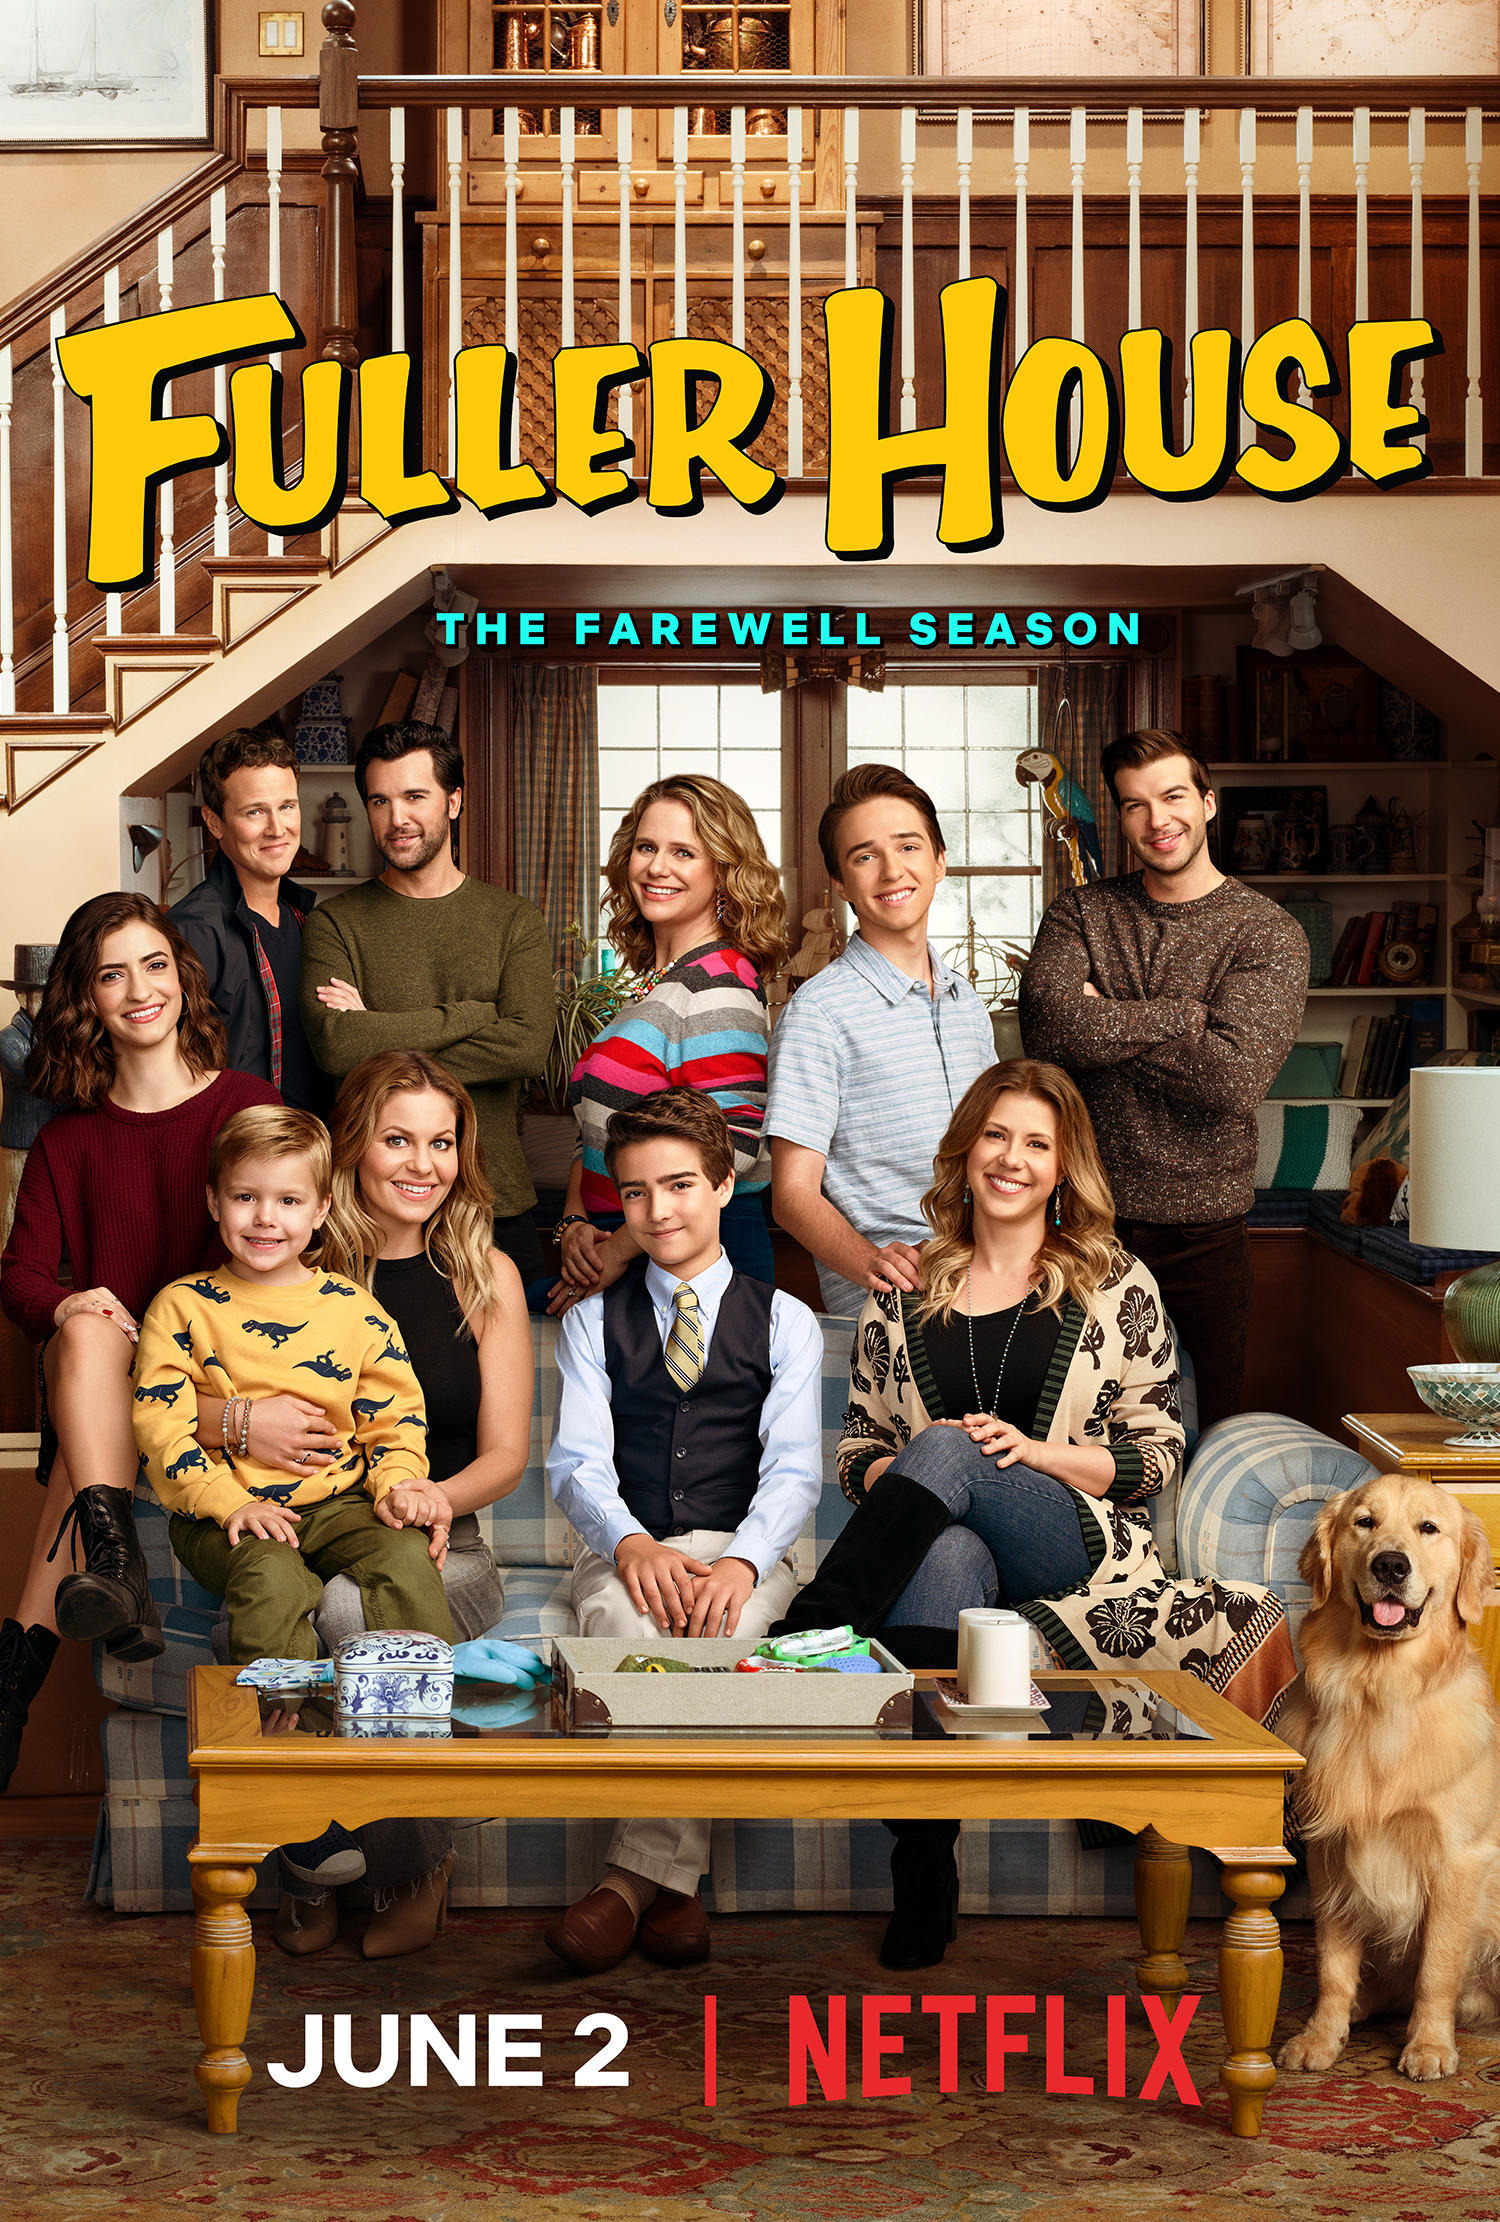 Mega Sized TV Poster Image for Fuller House (#16 of 16)